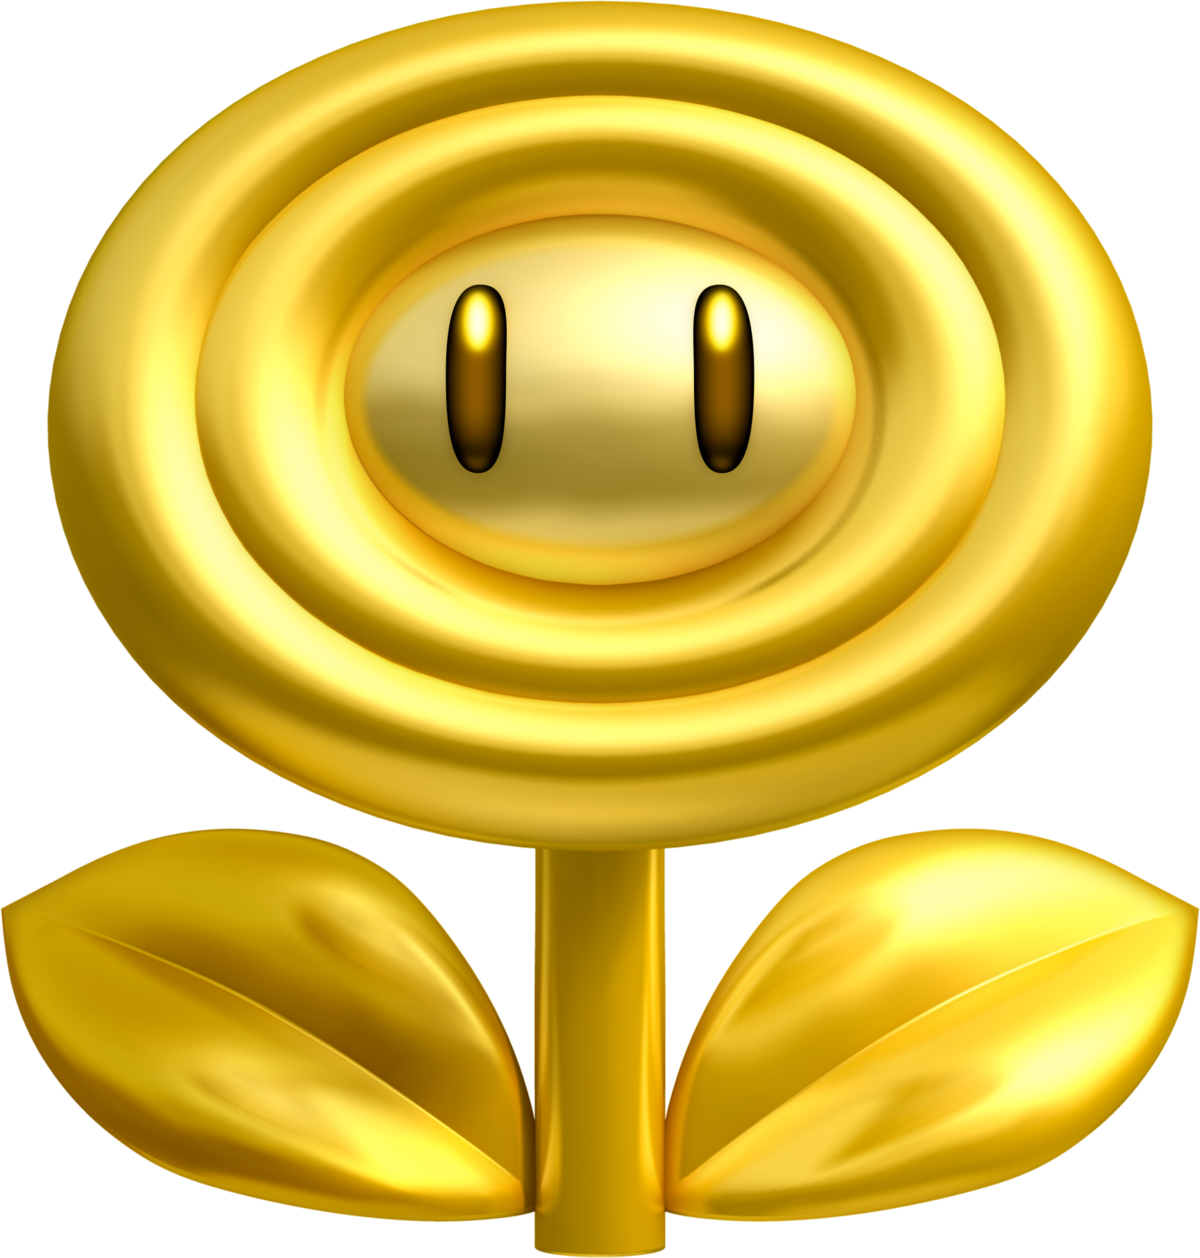 Gold Flower - Super Mario Wiki, the Mario encyclopedia